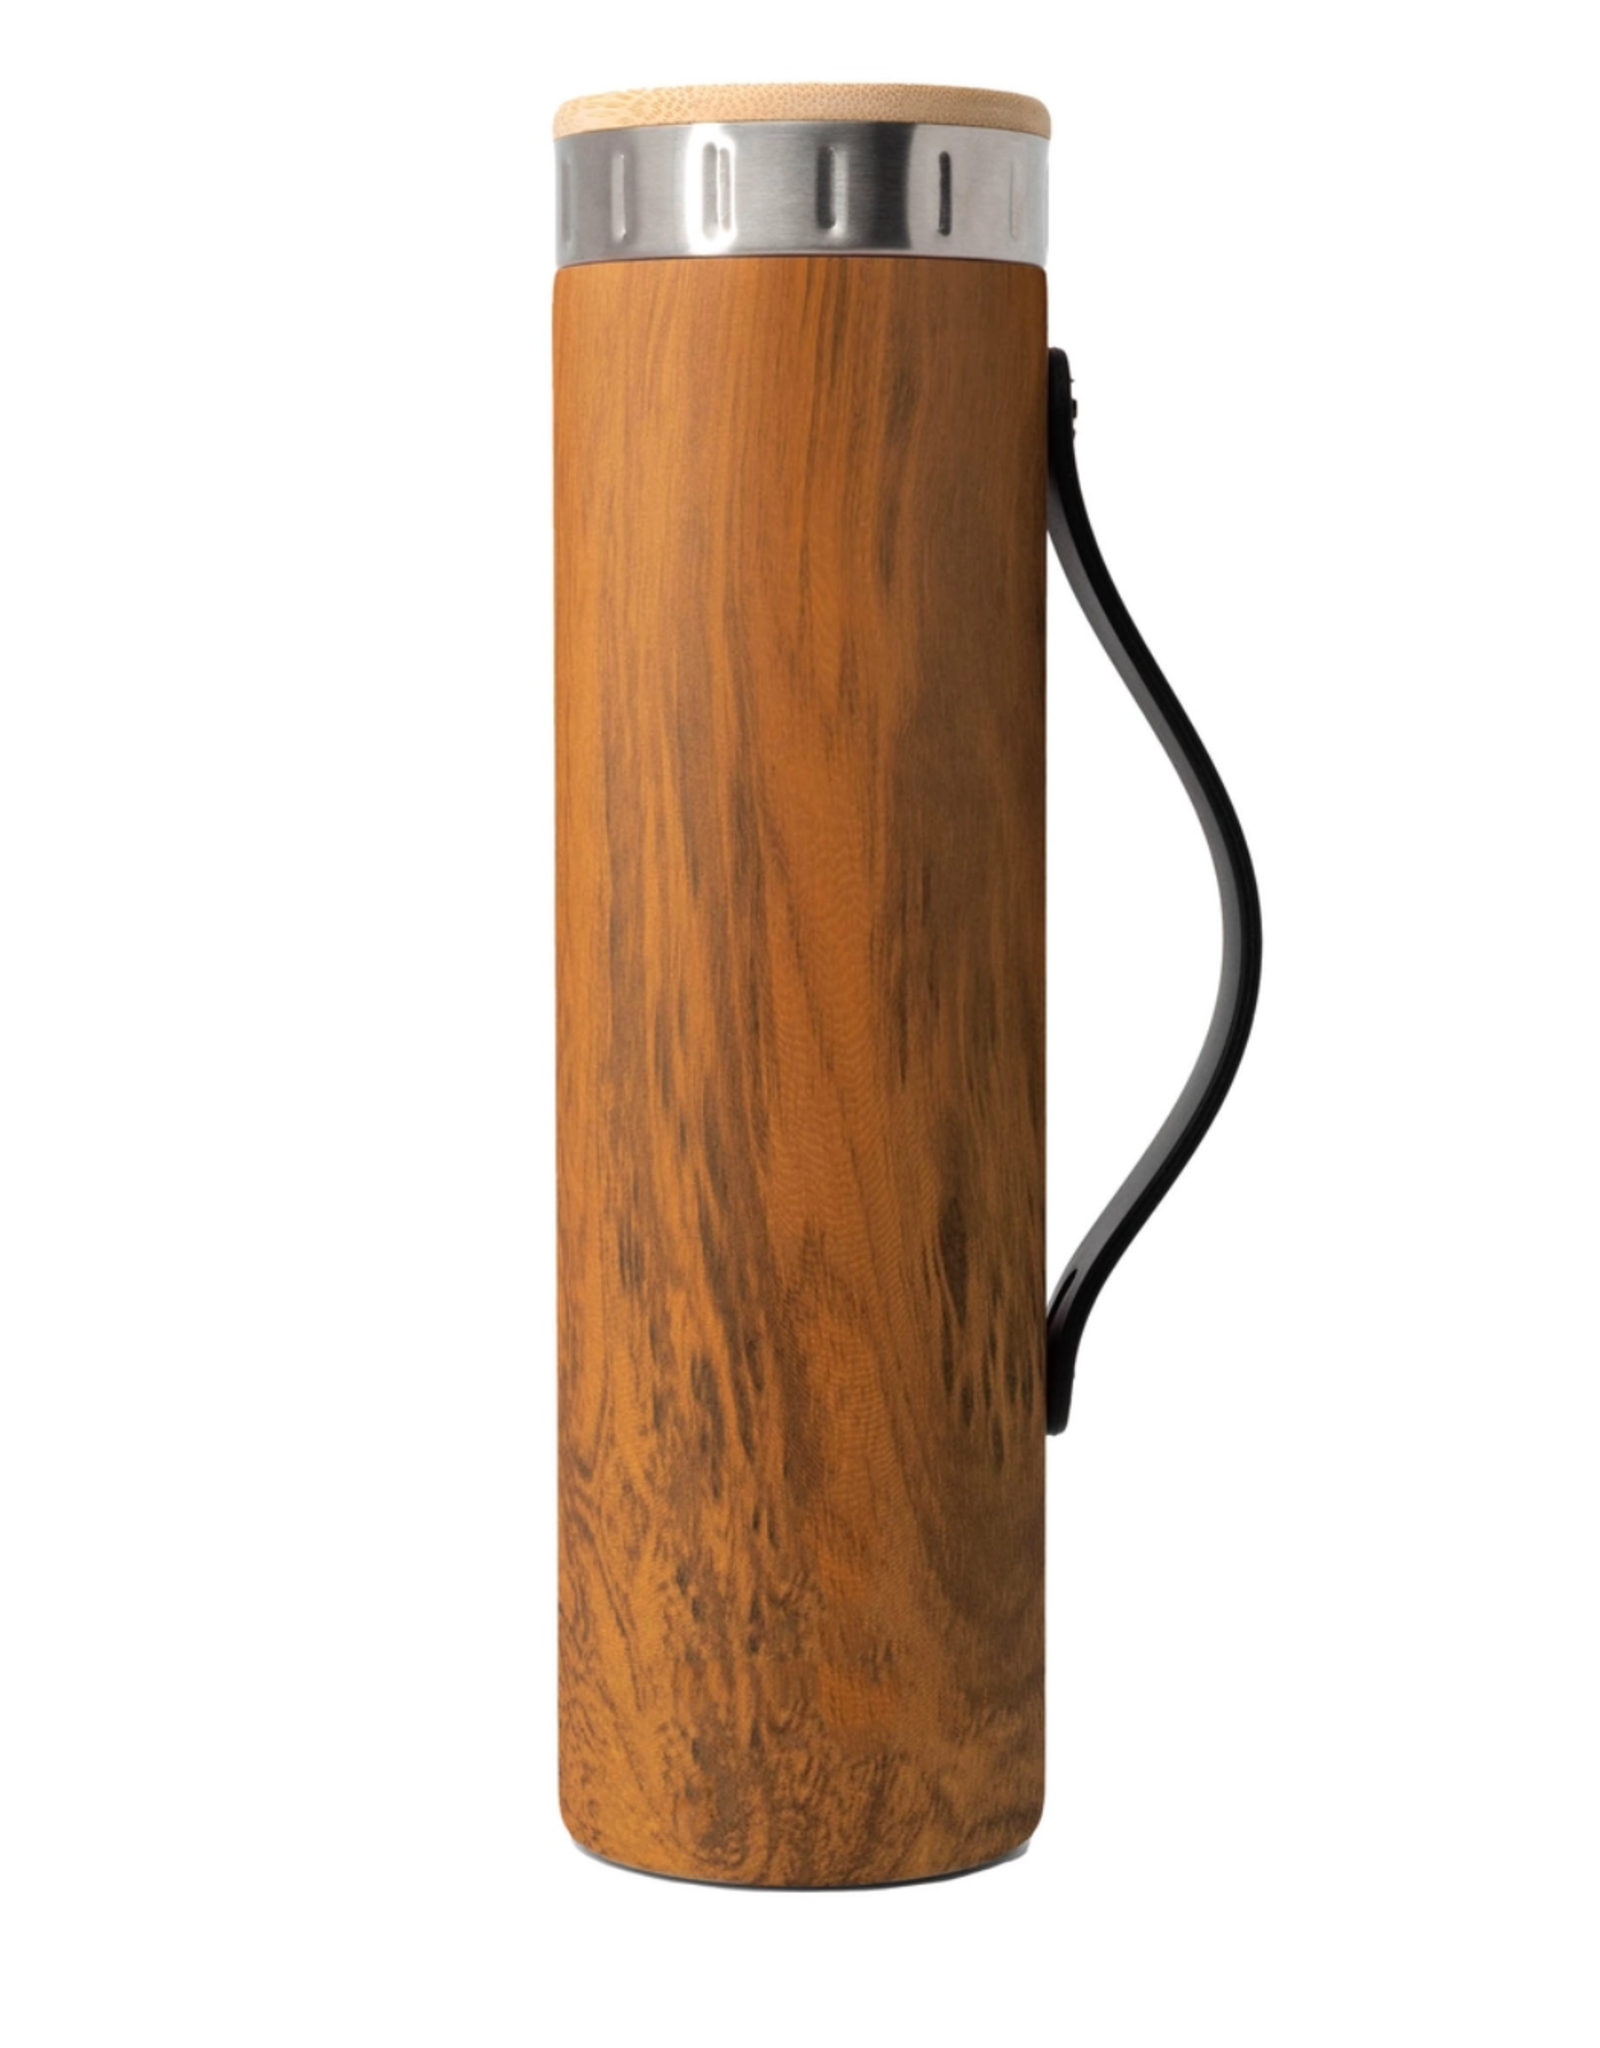 https://cdn.shoplightspeed.com/shops/610891/files/33667422/1600x2048x1/iconic-teak-wood-water-bottle-with-strap-20-oz.jpg